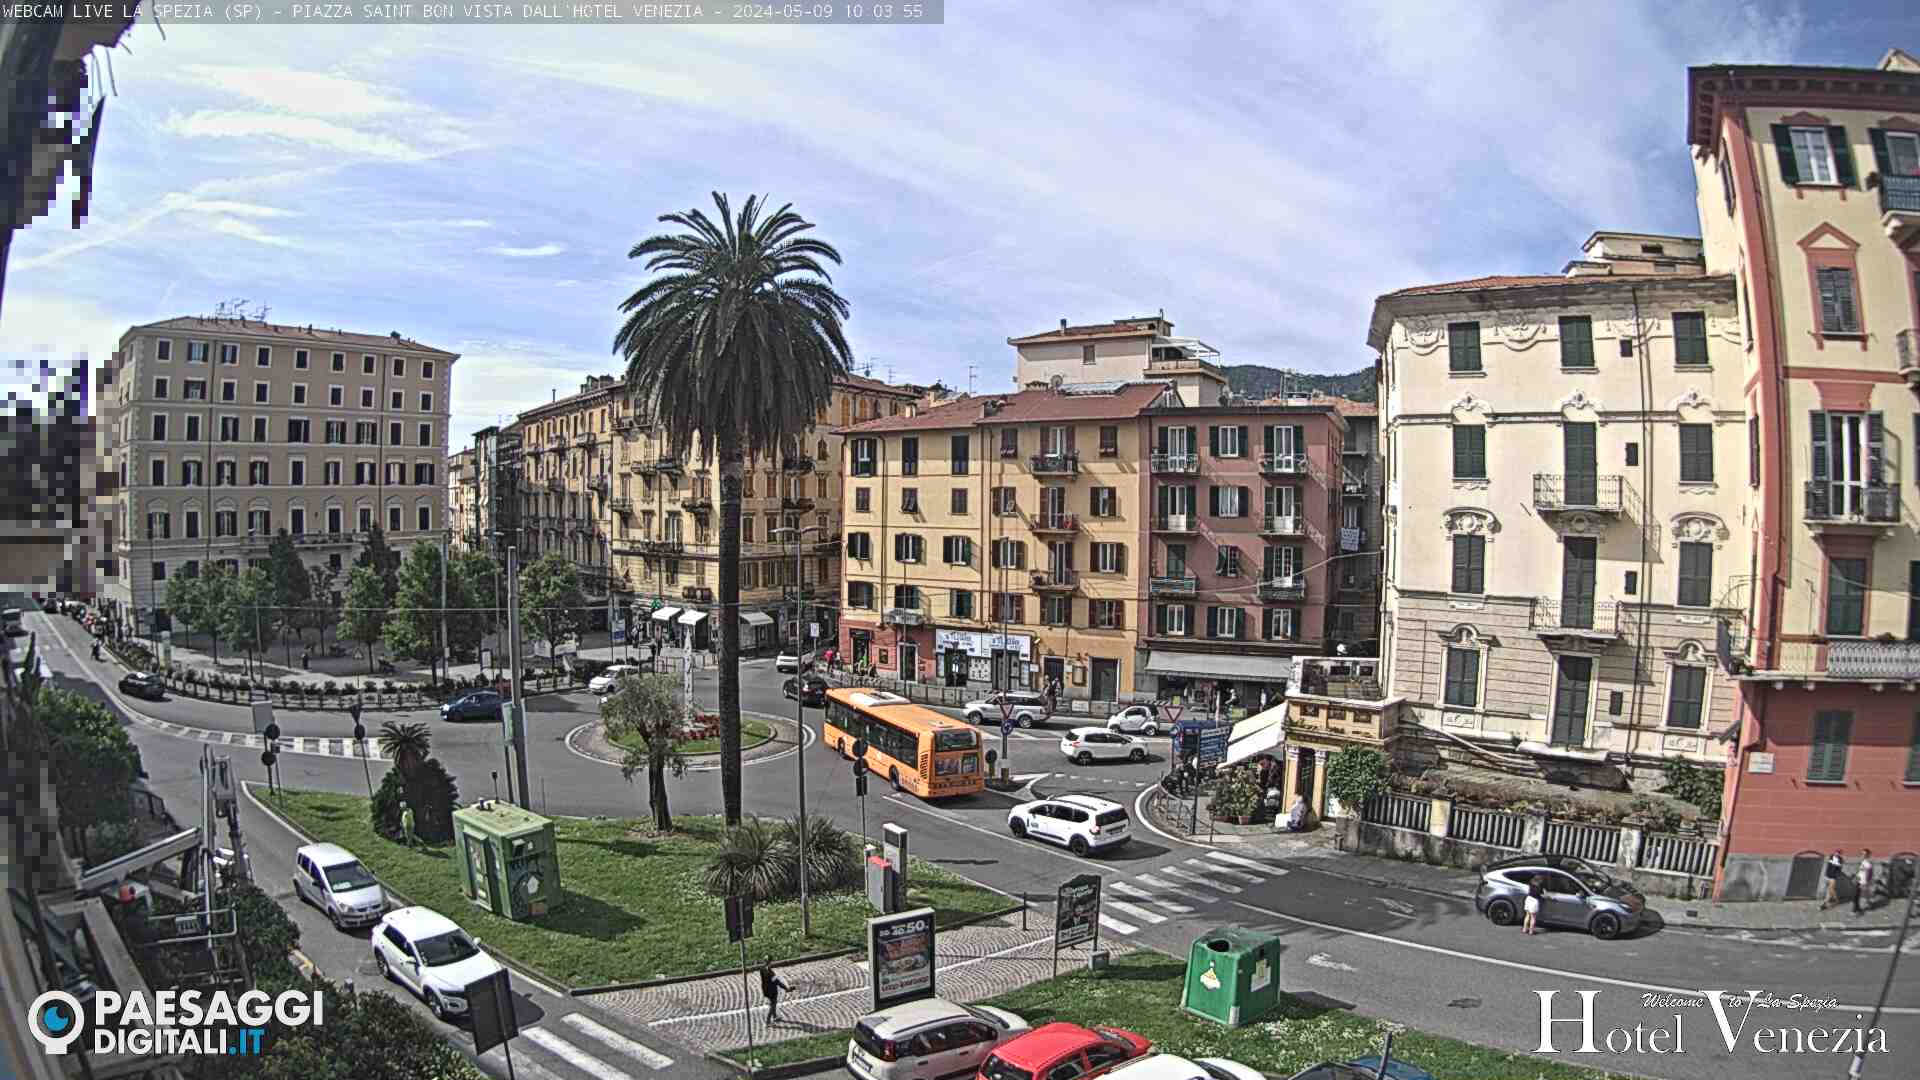 La Spezia (SP) – Piazza Saint Bon